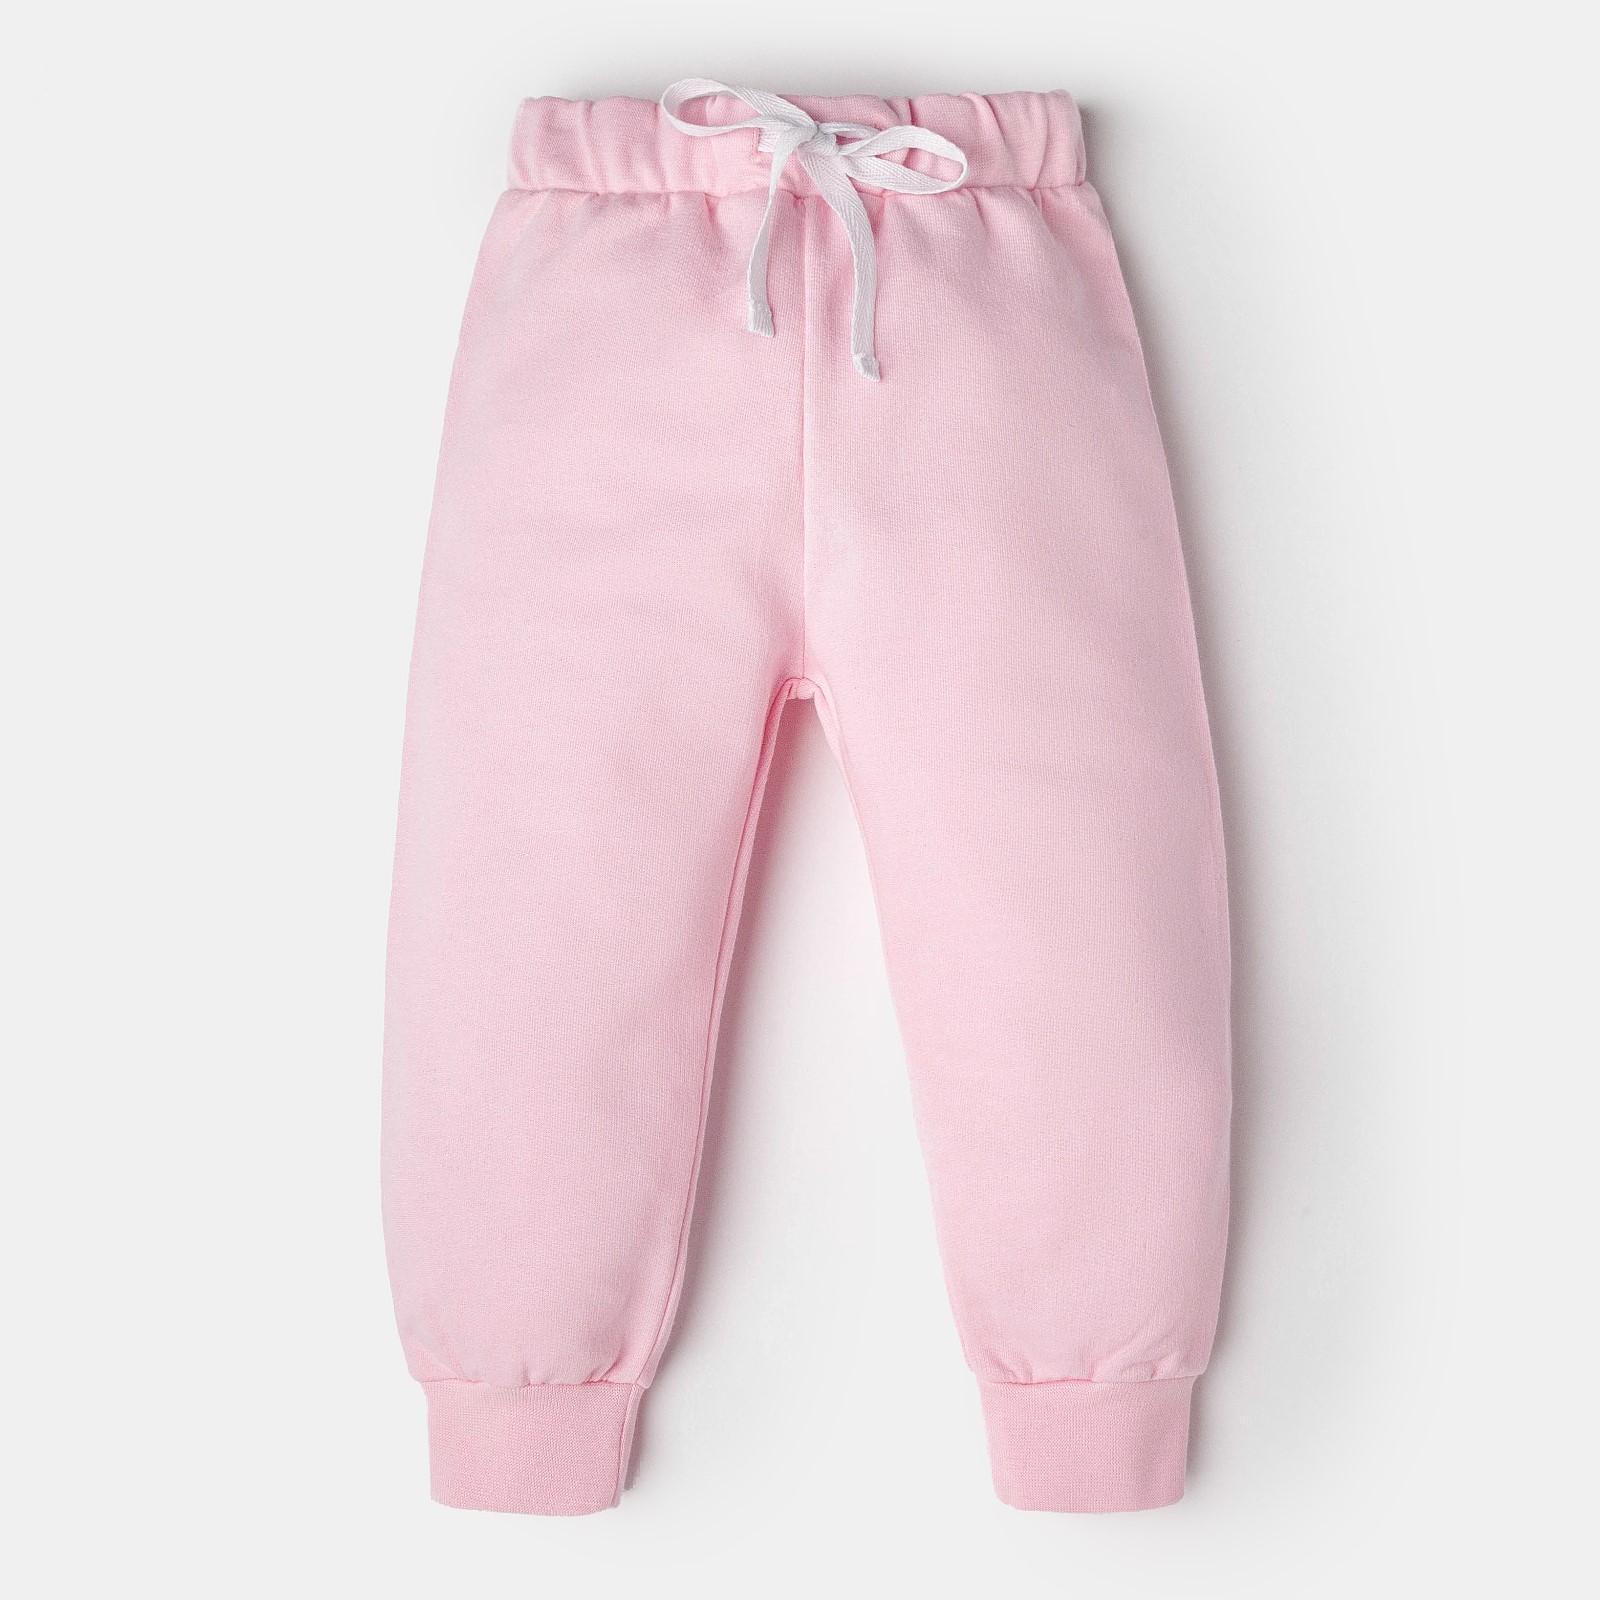 Ползунки-штанишки Любимая Малышка Цвет: Розовый (6-9 мес), размер 6-9 мес